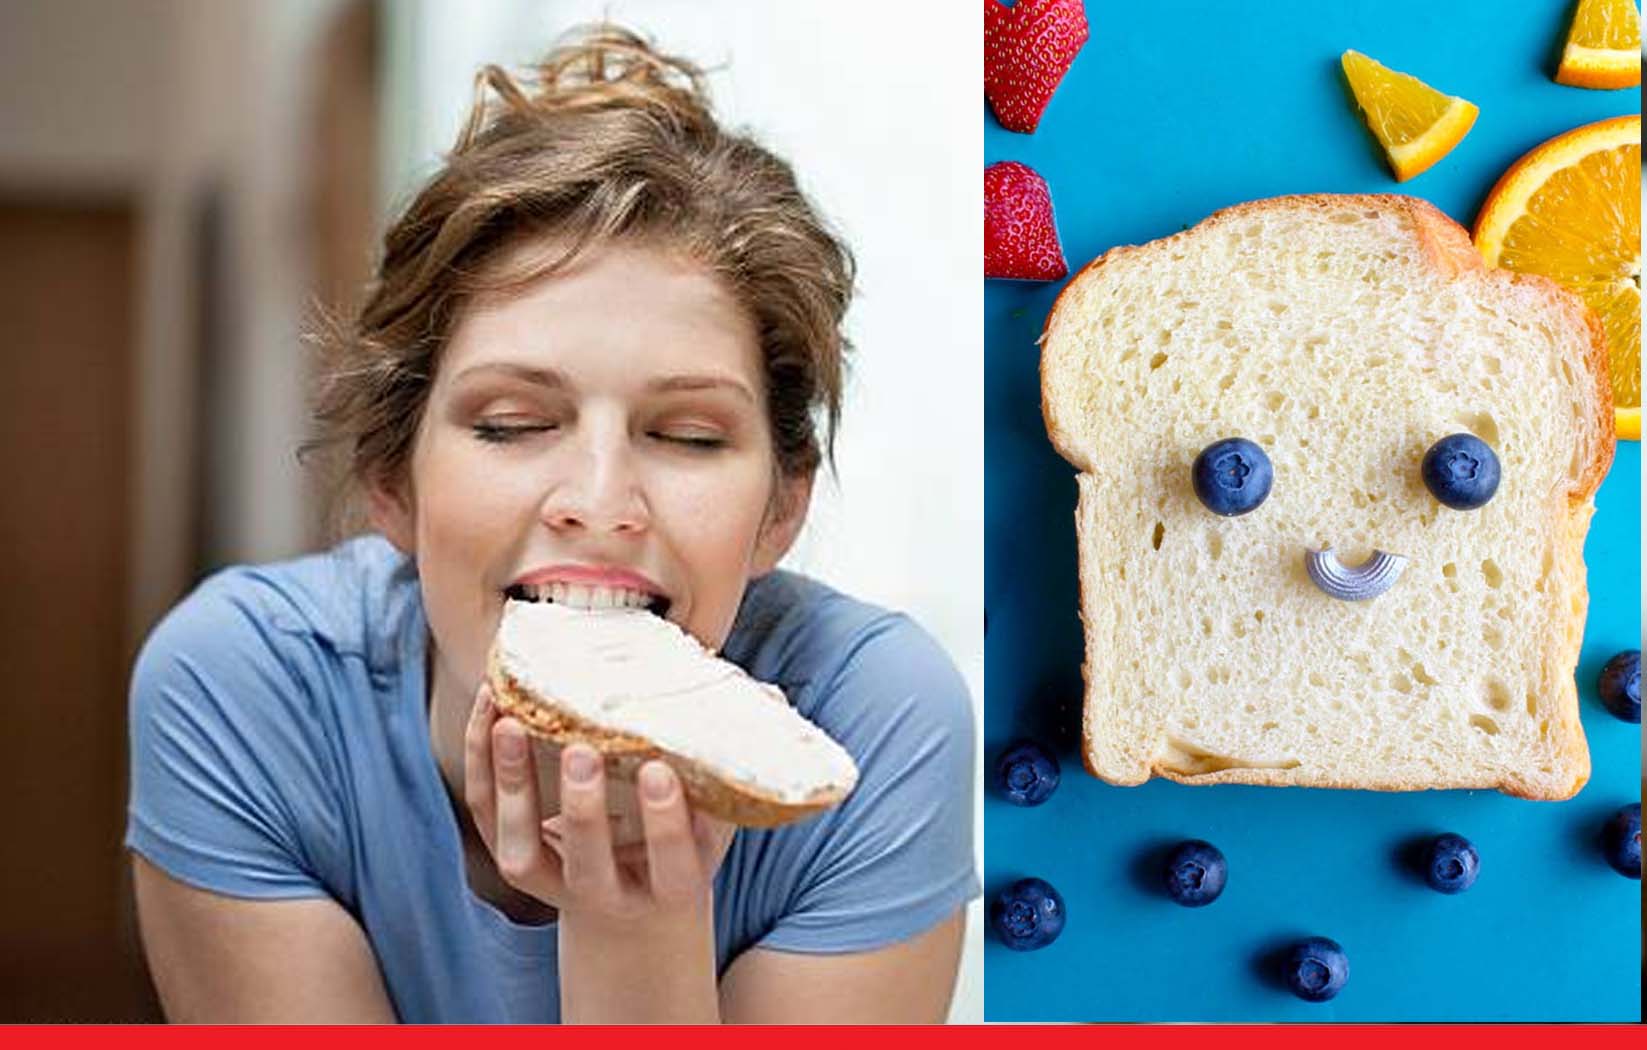 रोज खा रहे हैं व्हाइट ब्रेड, तो हो जाएं सावधान, हो सकती हैं कई गंभीर बीमारियां